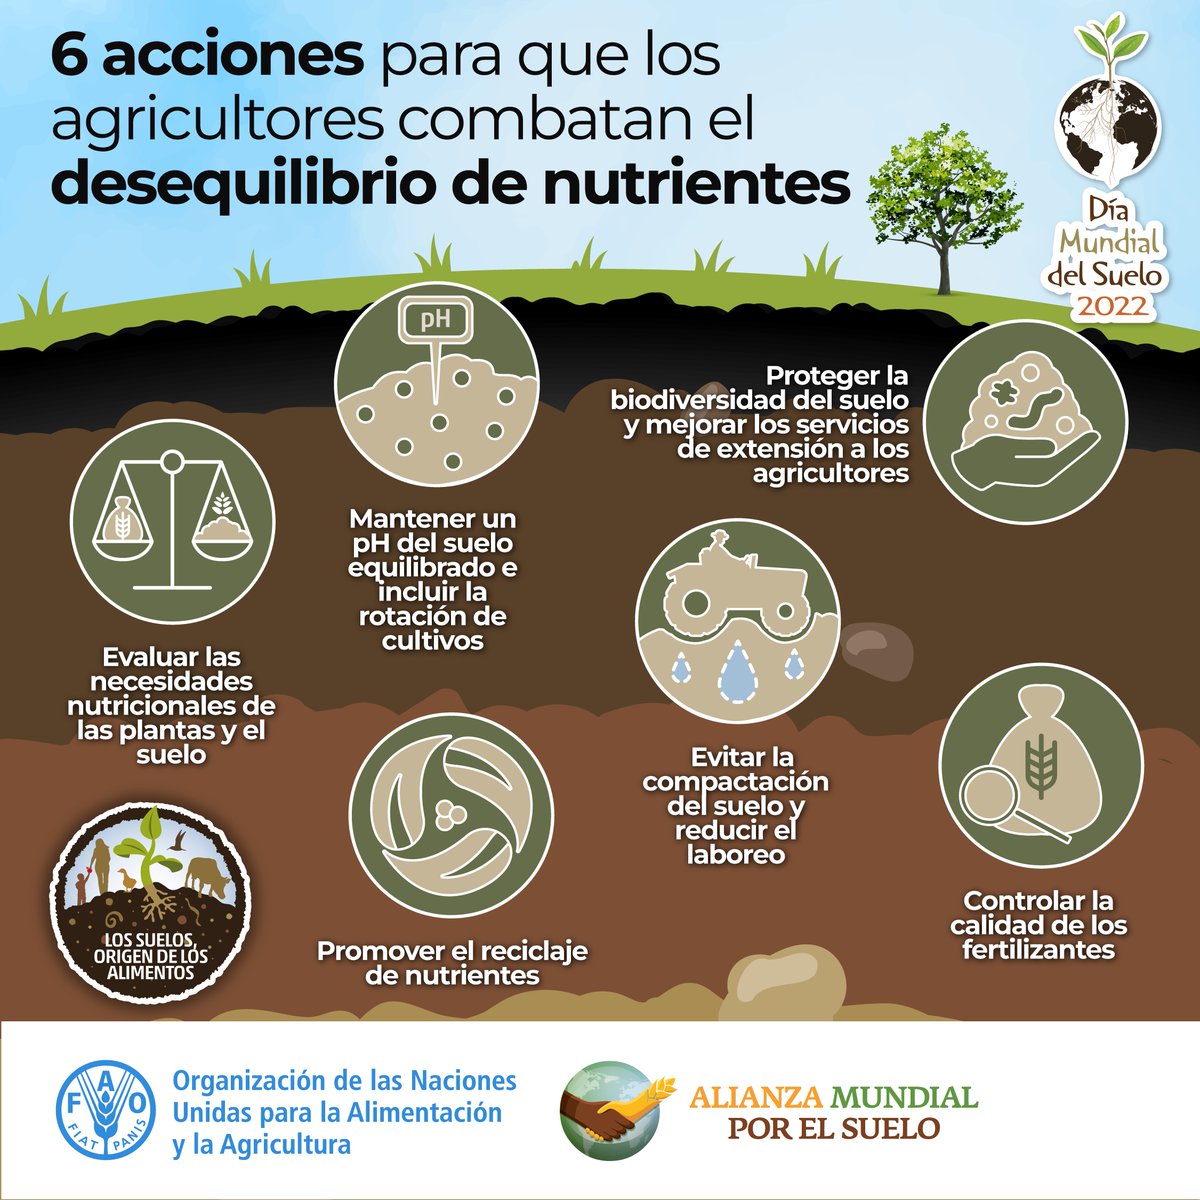 🌱 Los suelos son el origen de nuestros #Alimentos. 🌳 Aquí hay 6 formas de prevenir el desequilibrio de nutrientes en los suelos 👇 ¡Ayudanos a proteger los suelos y compartir esta información! #AcciónPorElSuelo